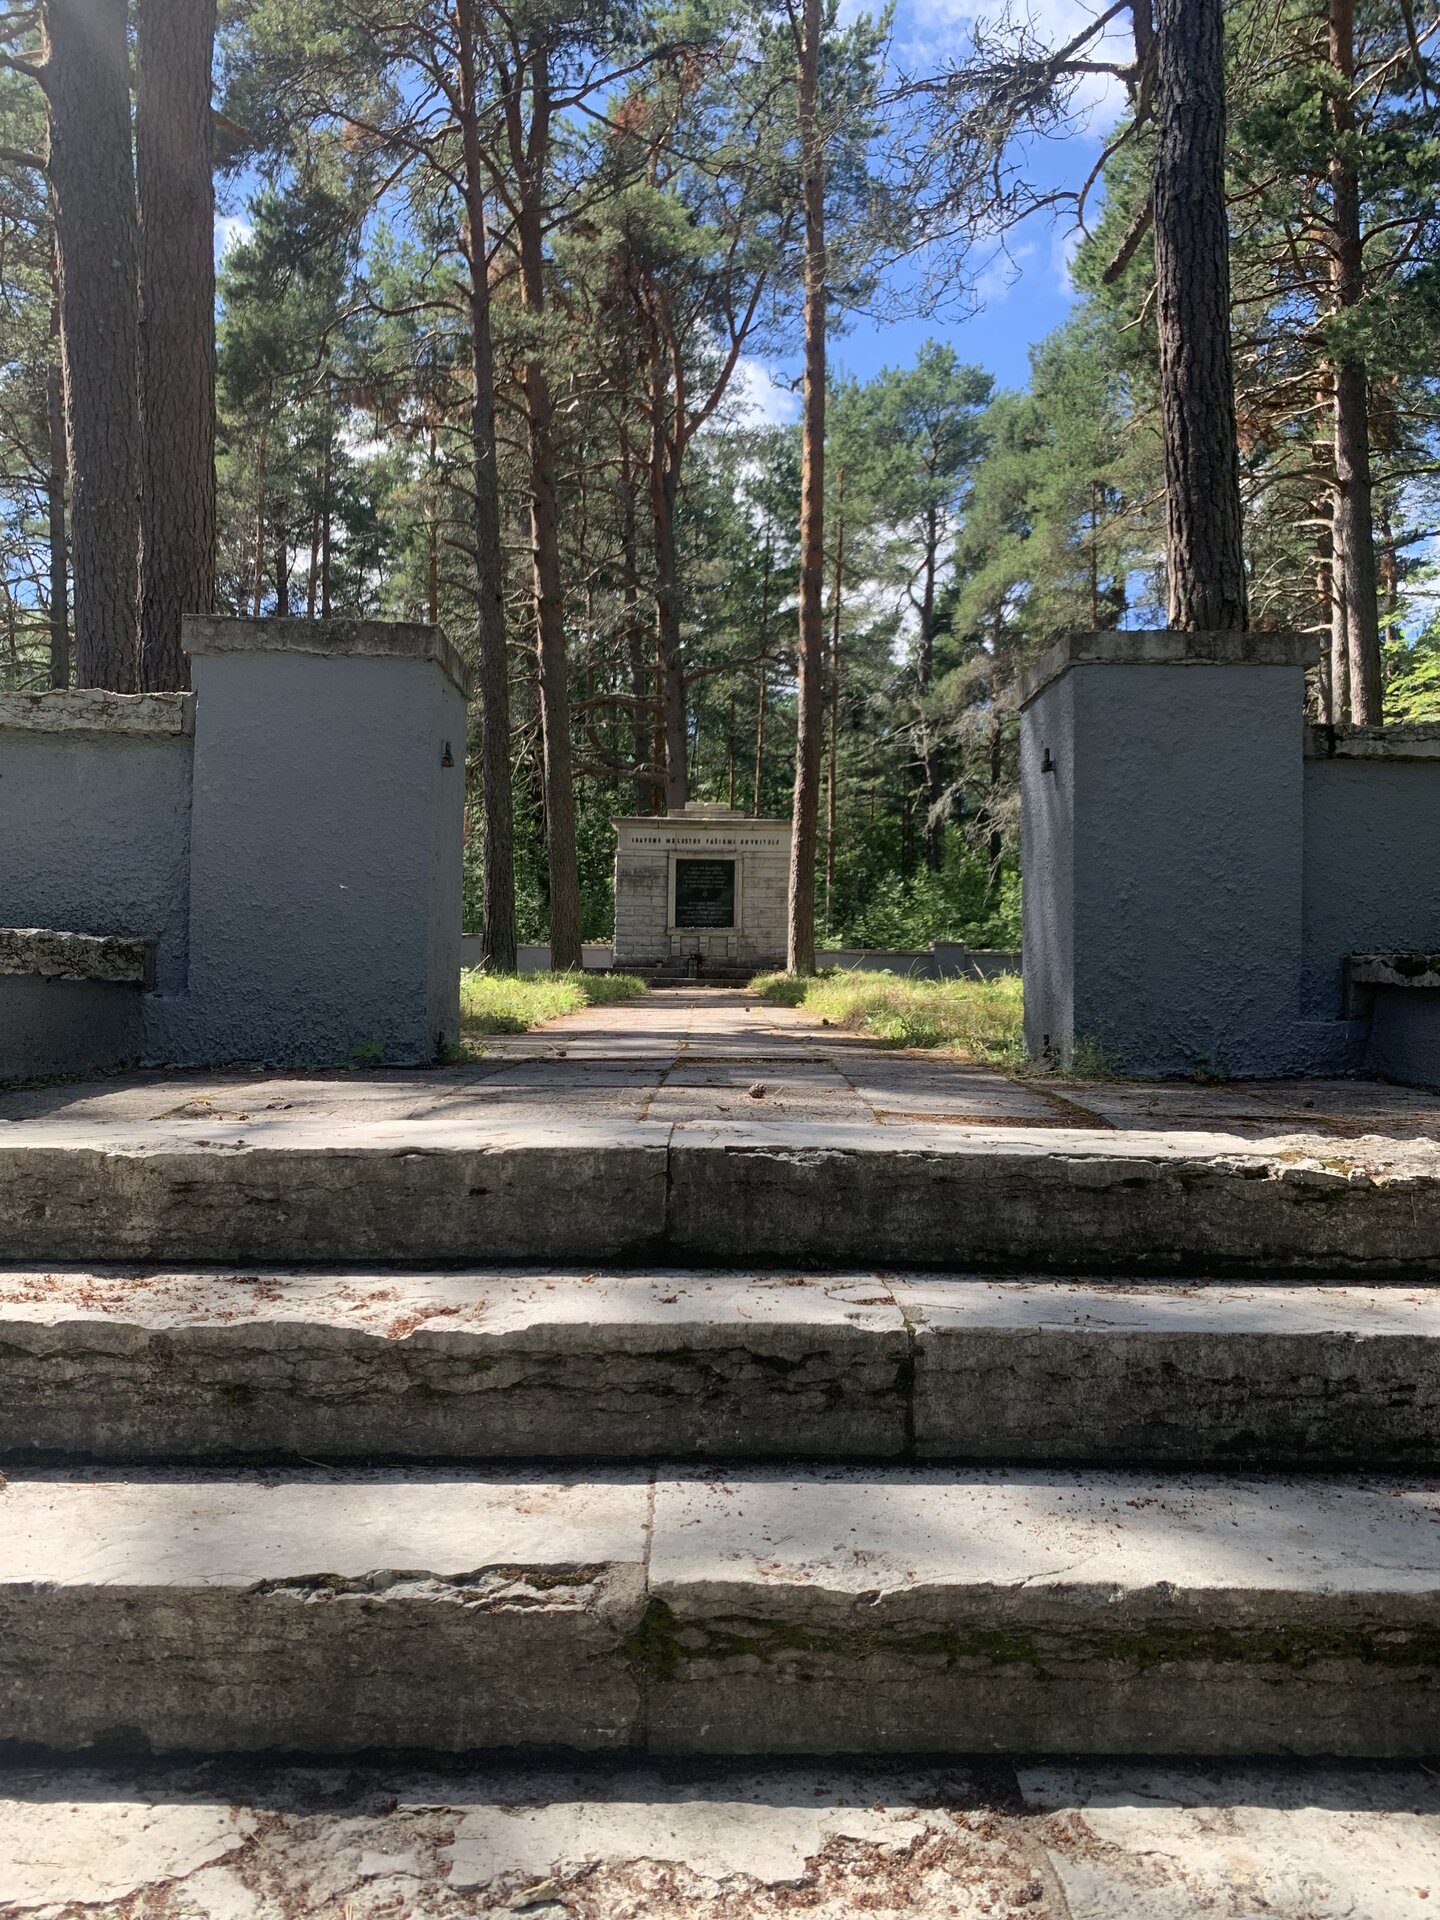 Klooga koncentrācijas nometne un holokausta memoriāls